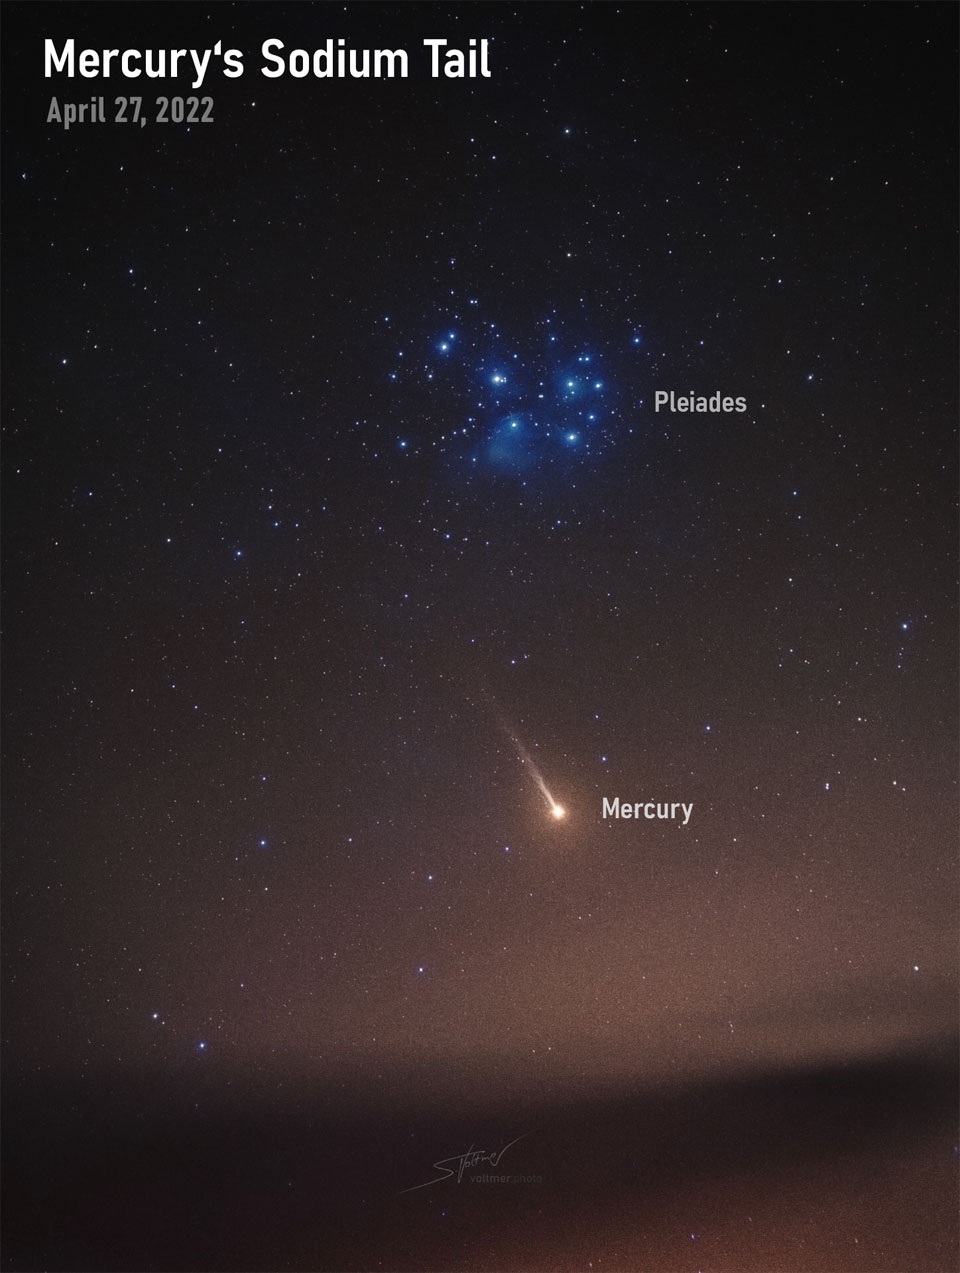 Das Bild zeigt den Planeten Merkur unter dem Sternhaufen
der Plejaden. Merkur sieht merkwürdigerweise wie ein Komet aus, denn er hat einen langen Ionenschweif aus Natrium.